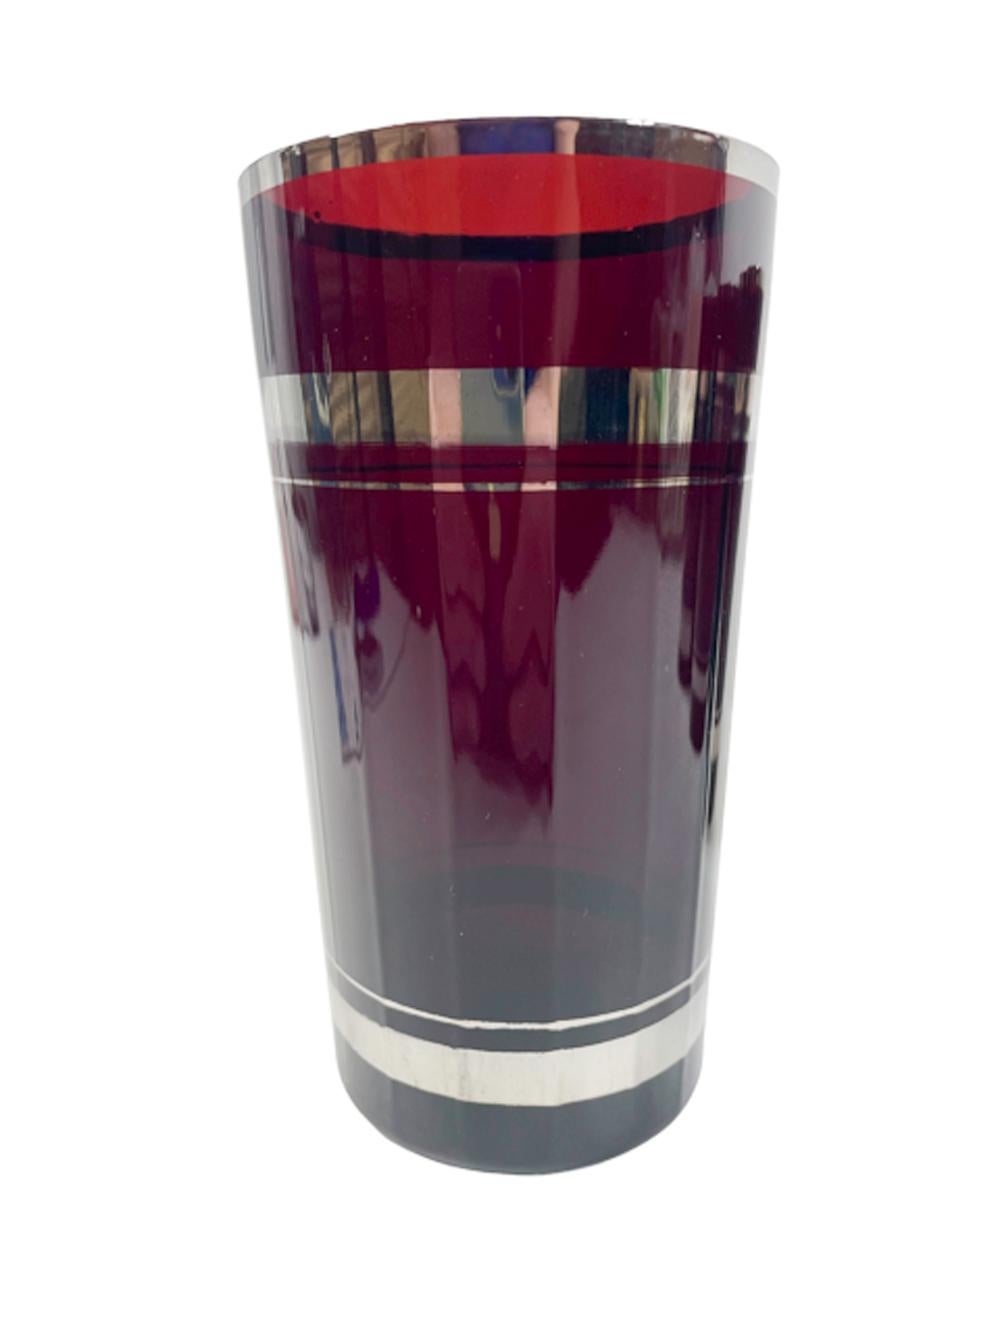 Ensemble de quatre verres highball en verre rouge rubis avec des côtés à facettes multiples et des bandes argentées.